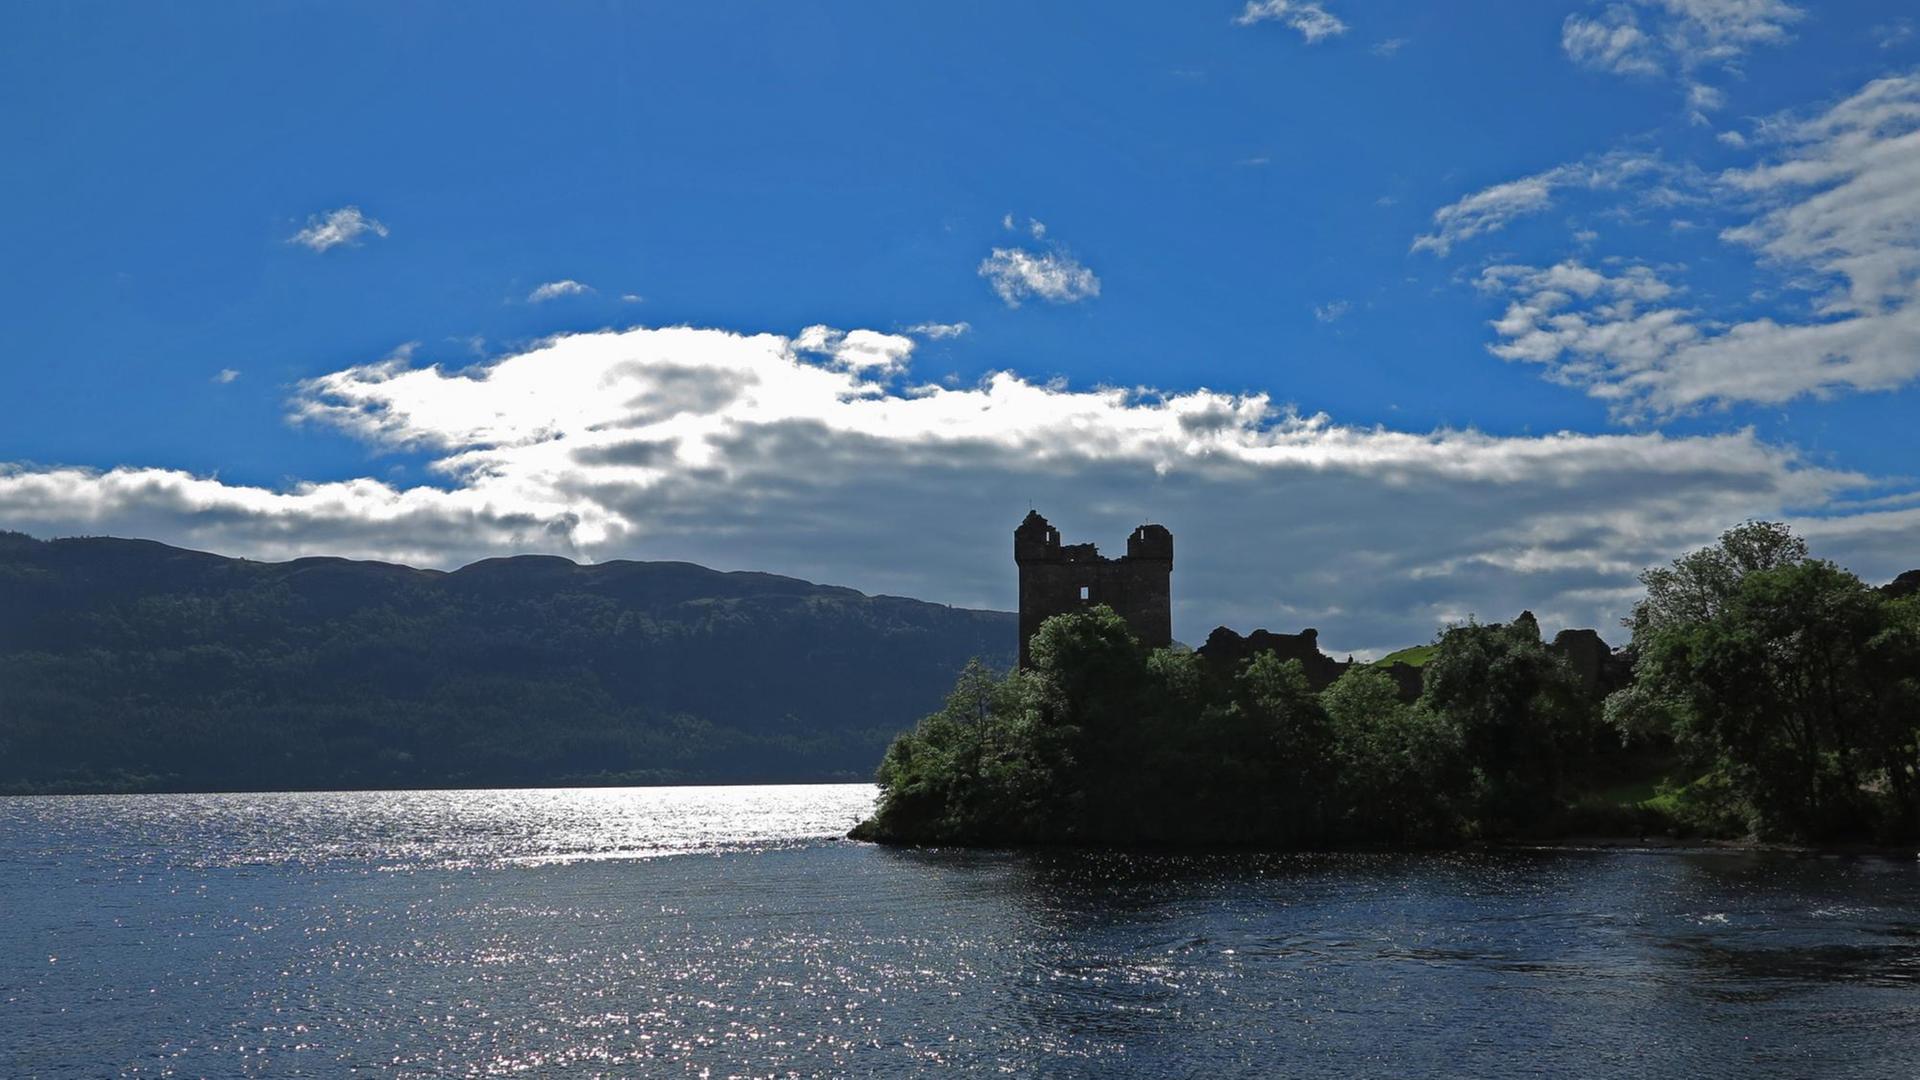 Die Burgruine Urquhart Castle am Ufer des Loch Ness, Schottland.